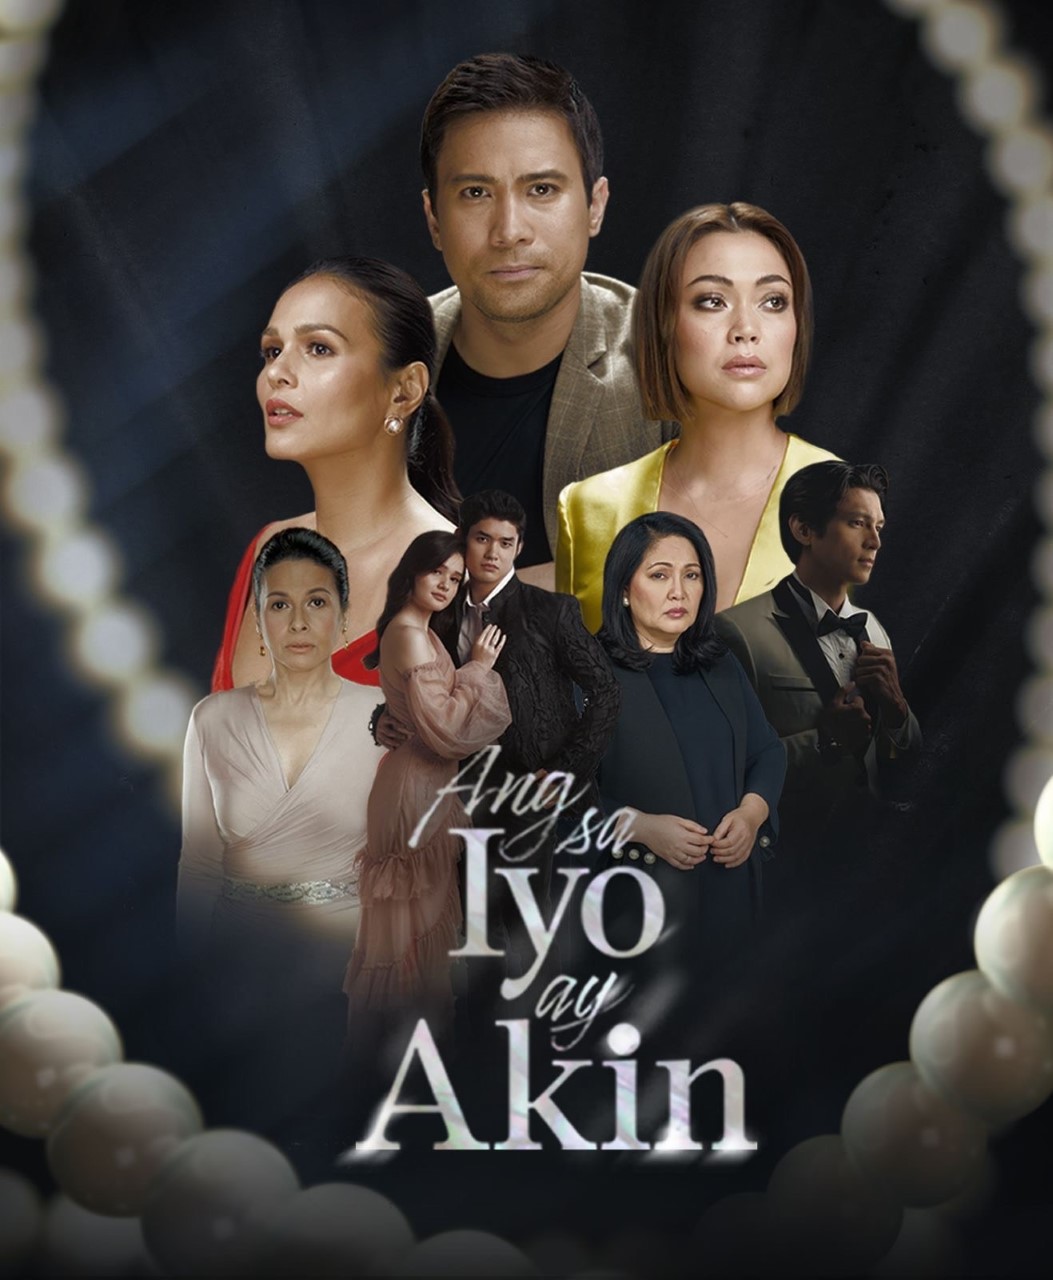 Sam and Iza's marriage fall apart; Jodi's life is put in danger in "Ang Sa Iyo Ay Akin"